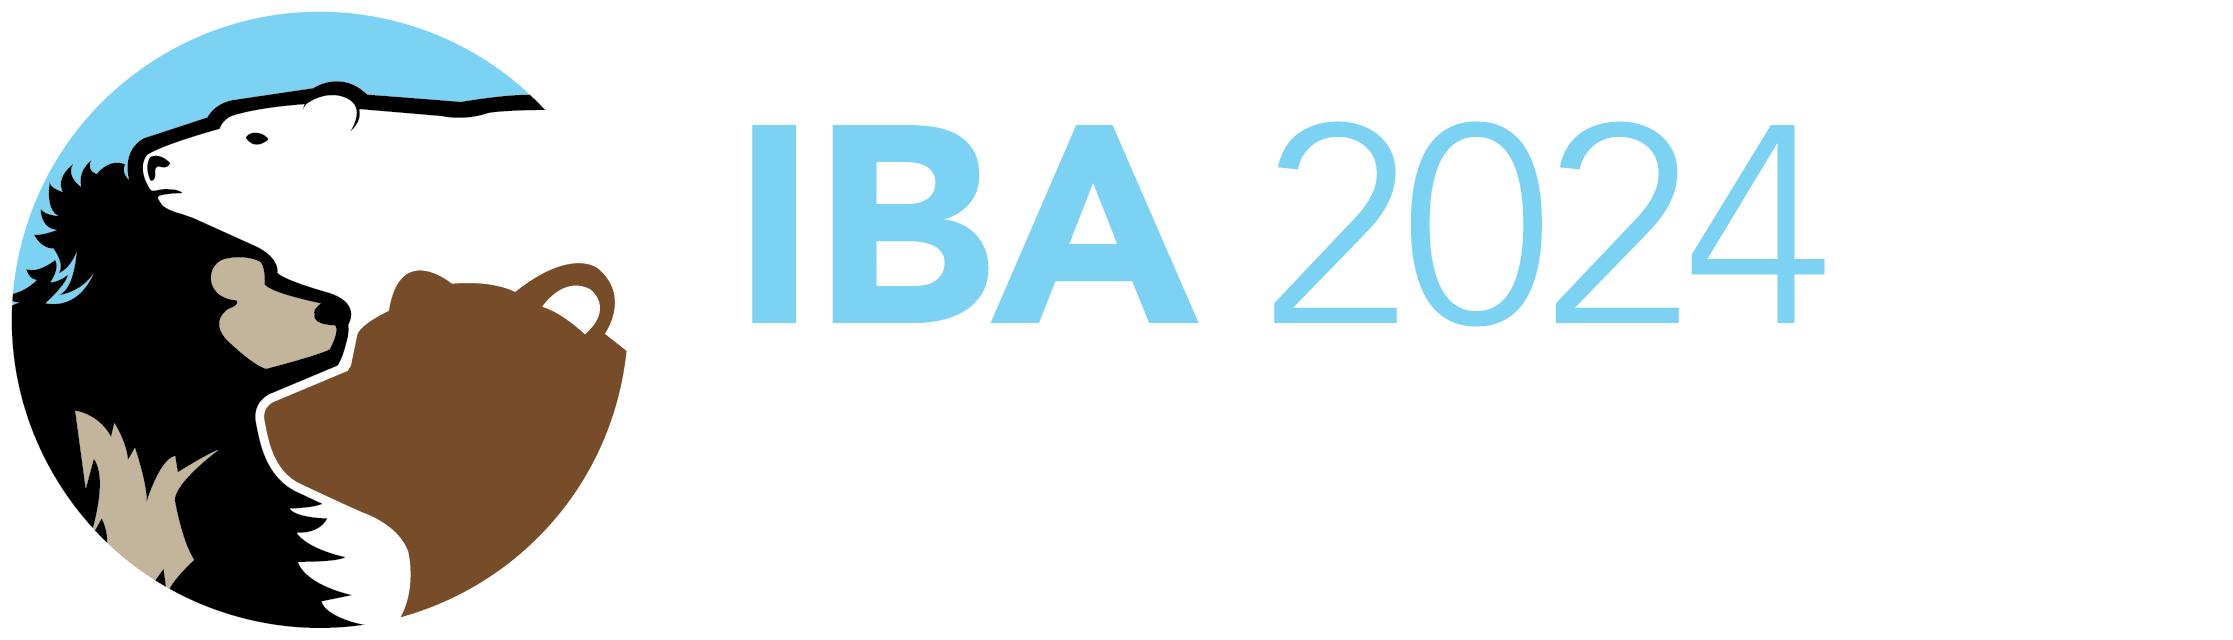 28th IBA Conference - Edmonton, Canada